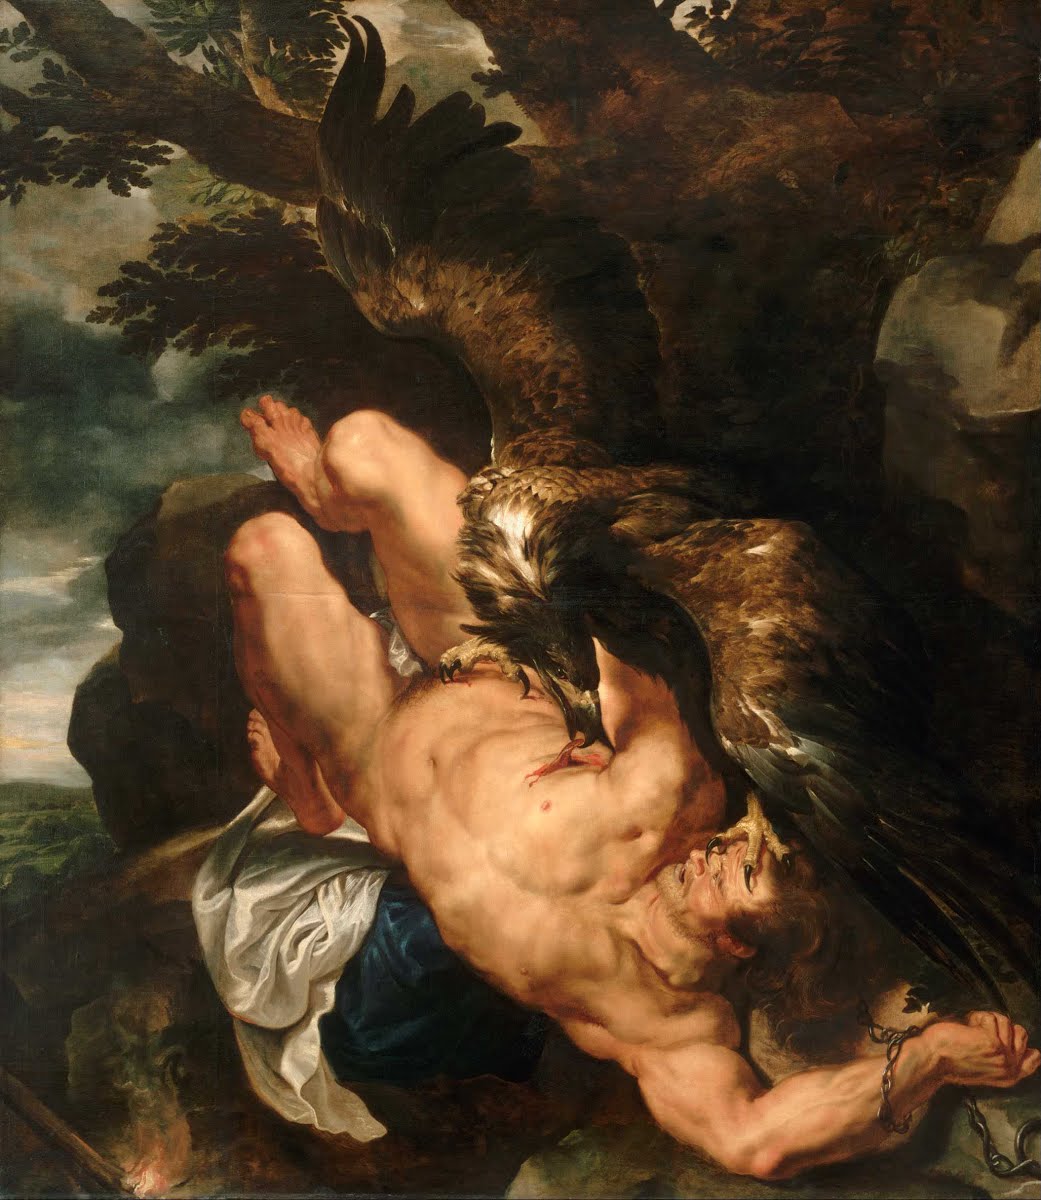 Összekötözött Prométheusz by Peter Paul Rubens - 1611-12 - 2,44 m x 2,1 m 